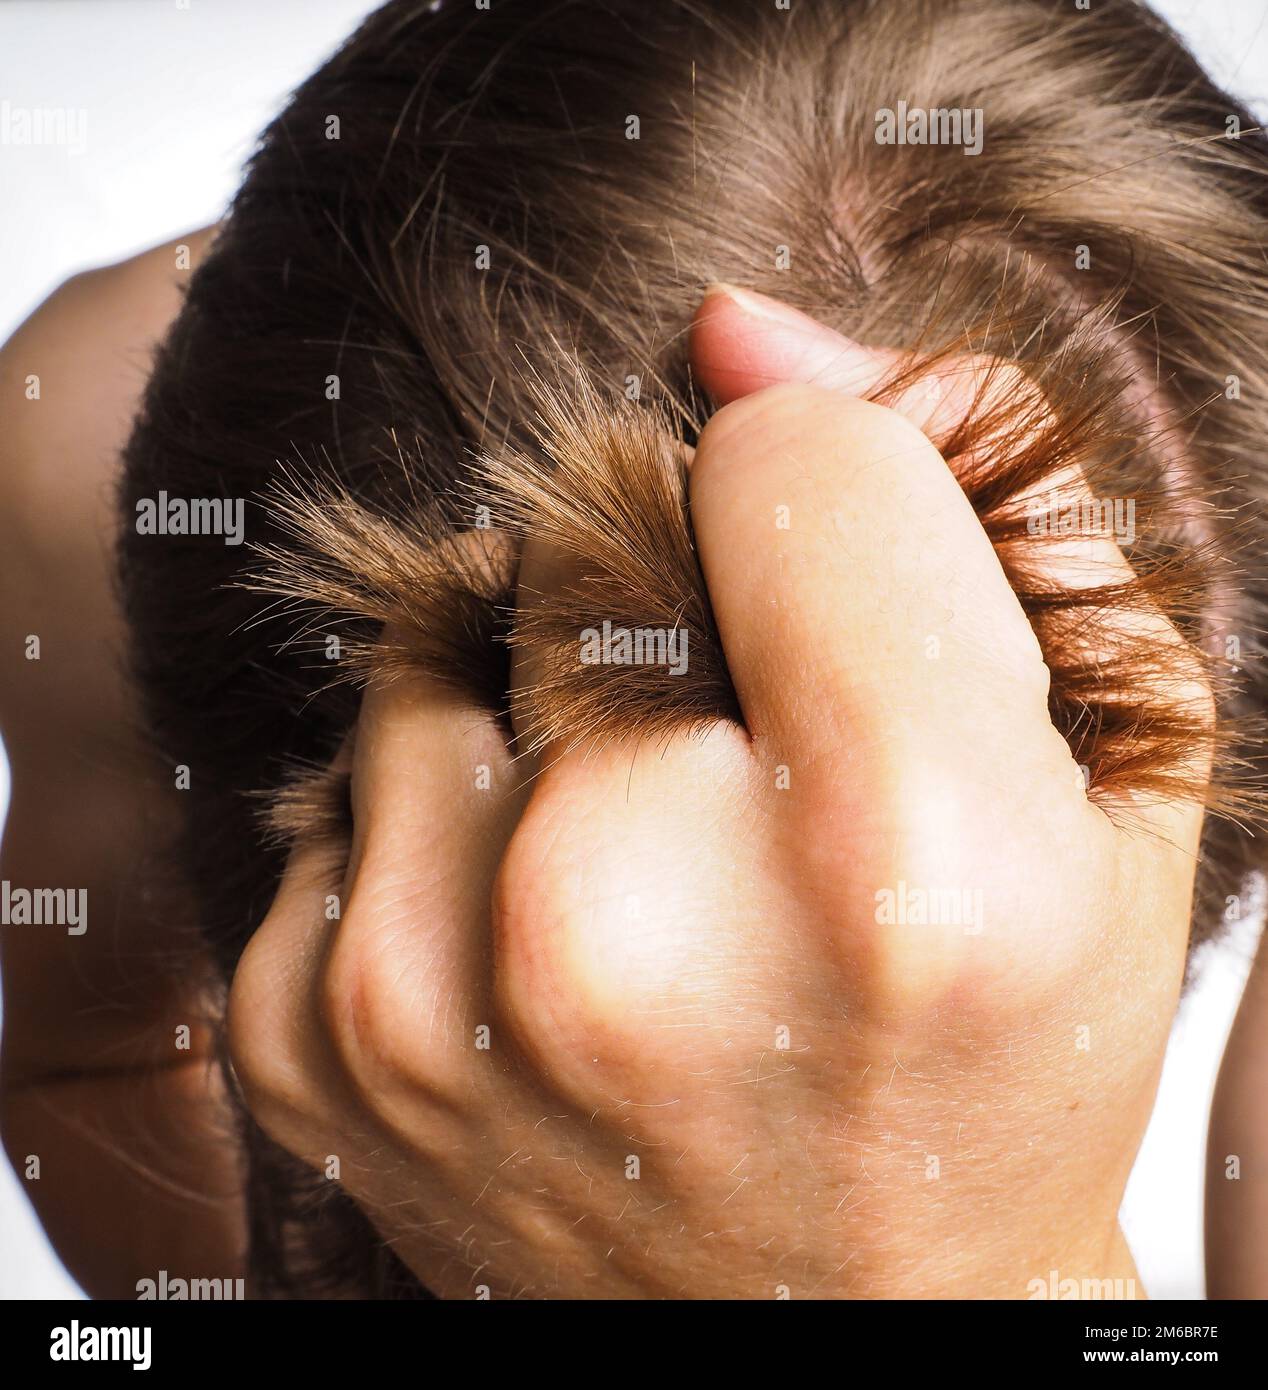 Primo piano della mano che tira i capelli dalla testa di una persona maschile Foto Stock